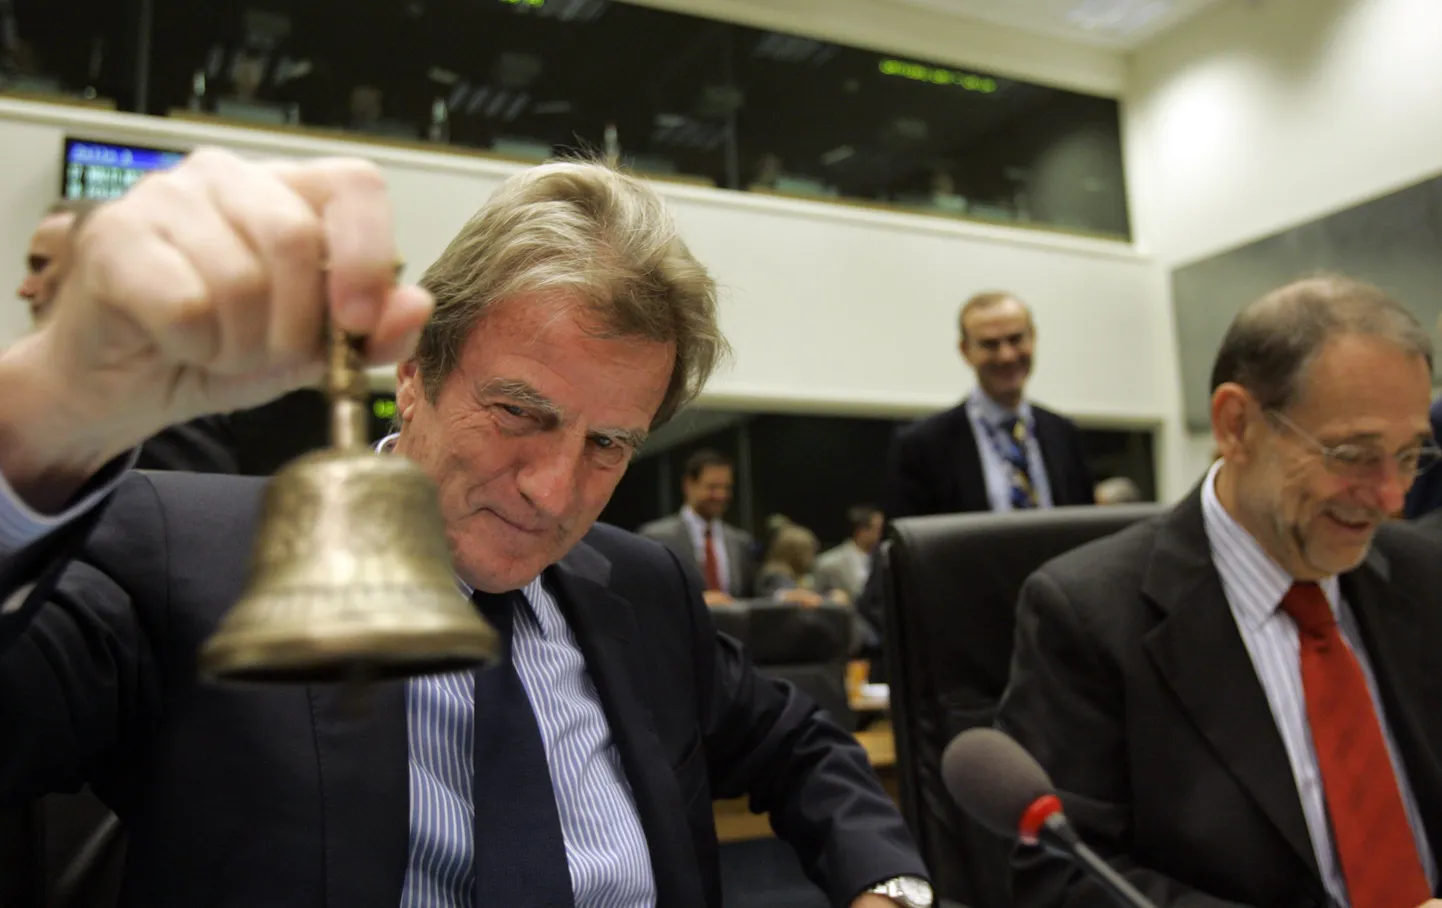 Prantsuse välisminister Bernard Kouchner avamas koosolekut ELi kolleegidega Luksemburgis.